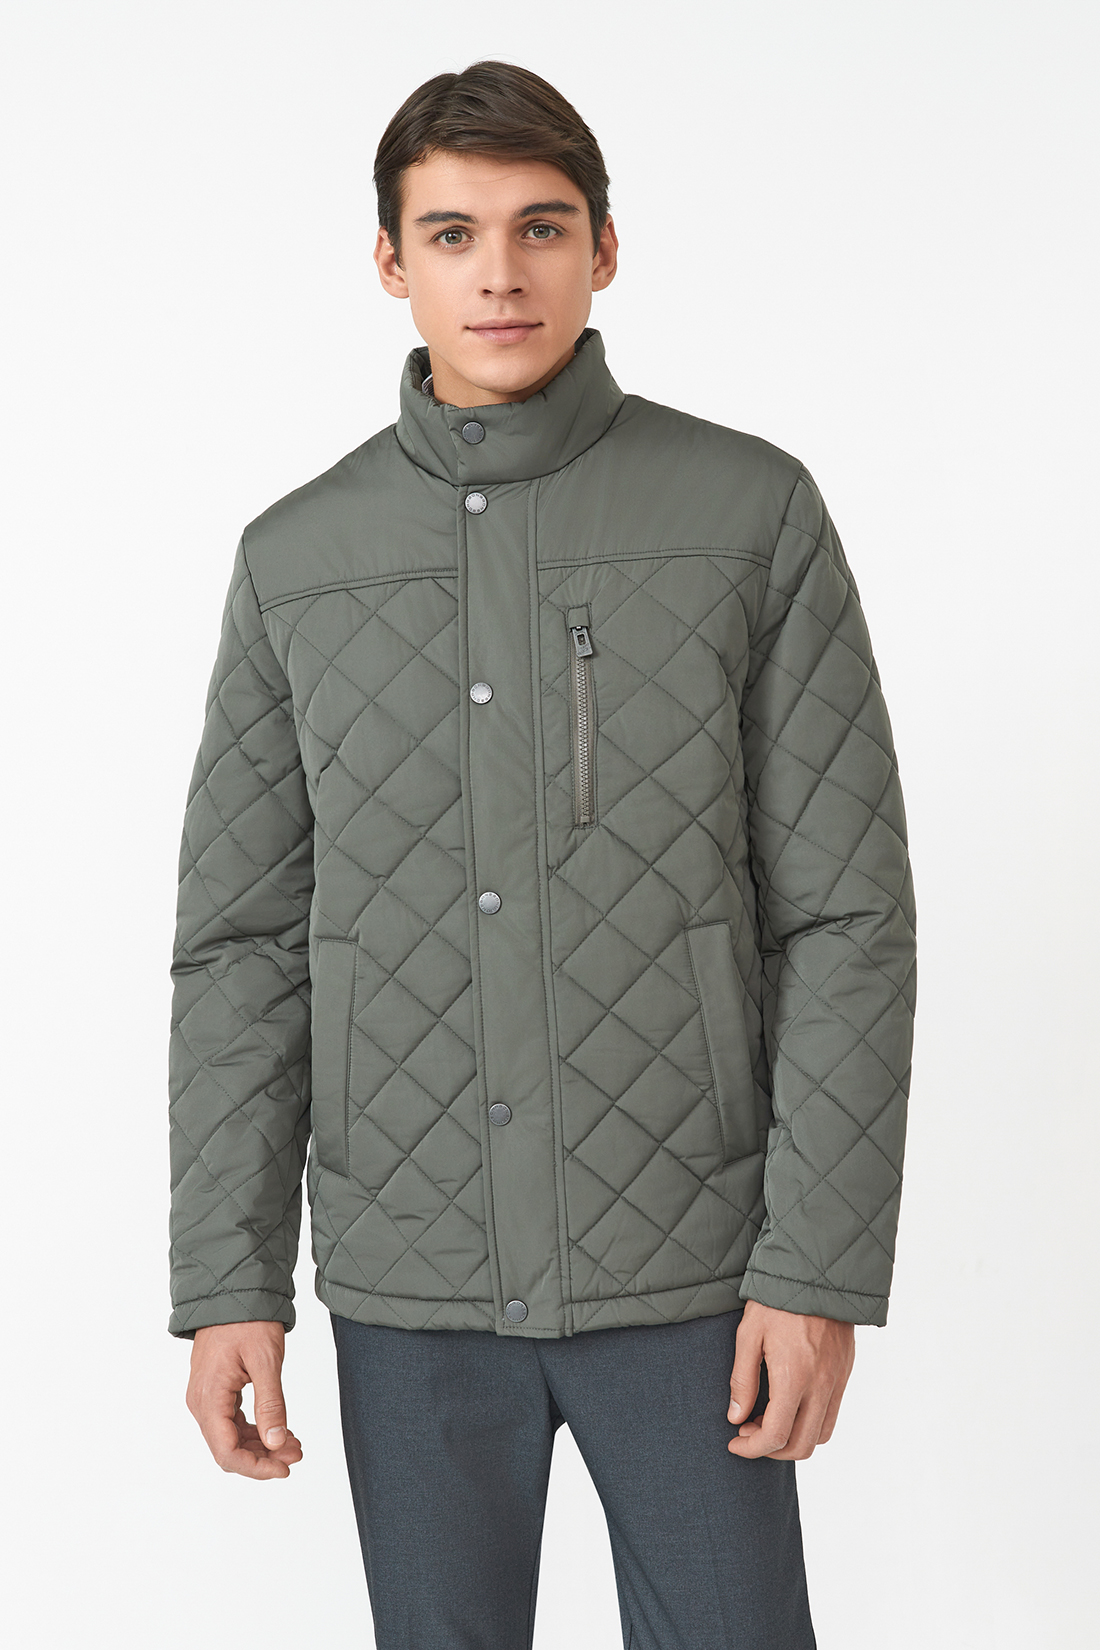 Зимняя куртка мужская Baon B5323506 зеленая L